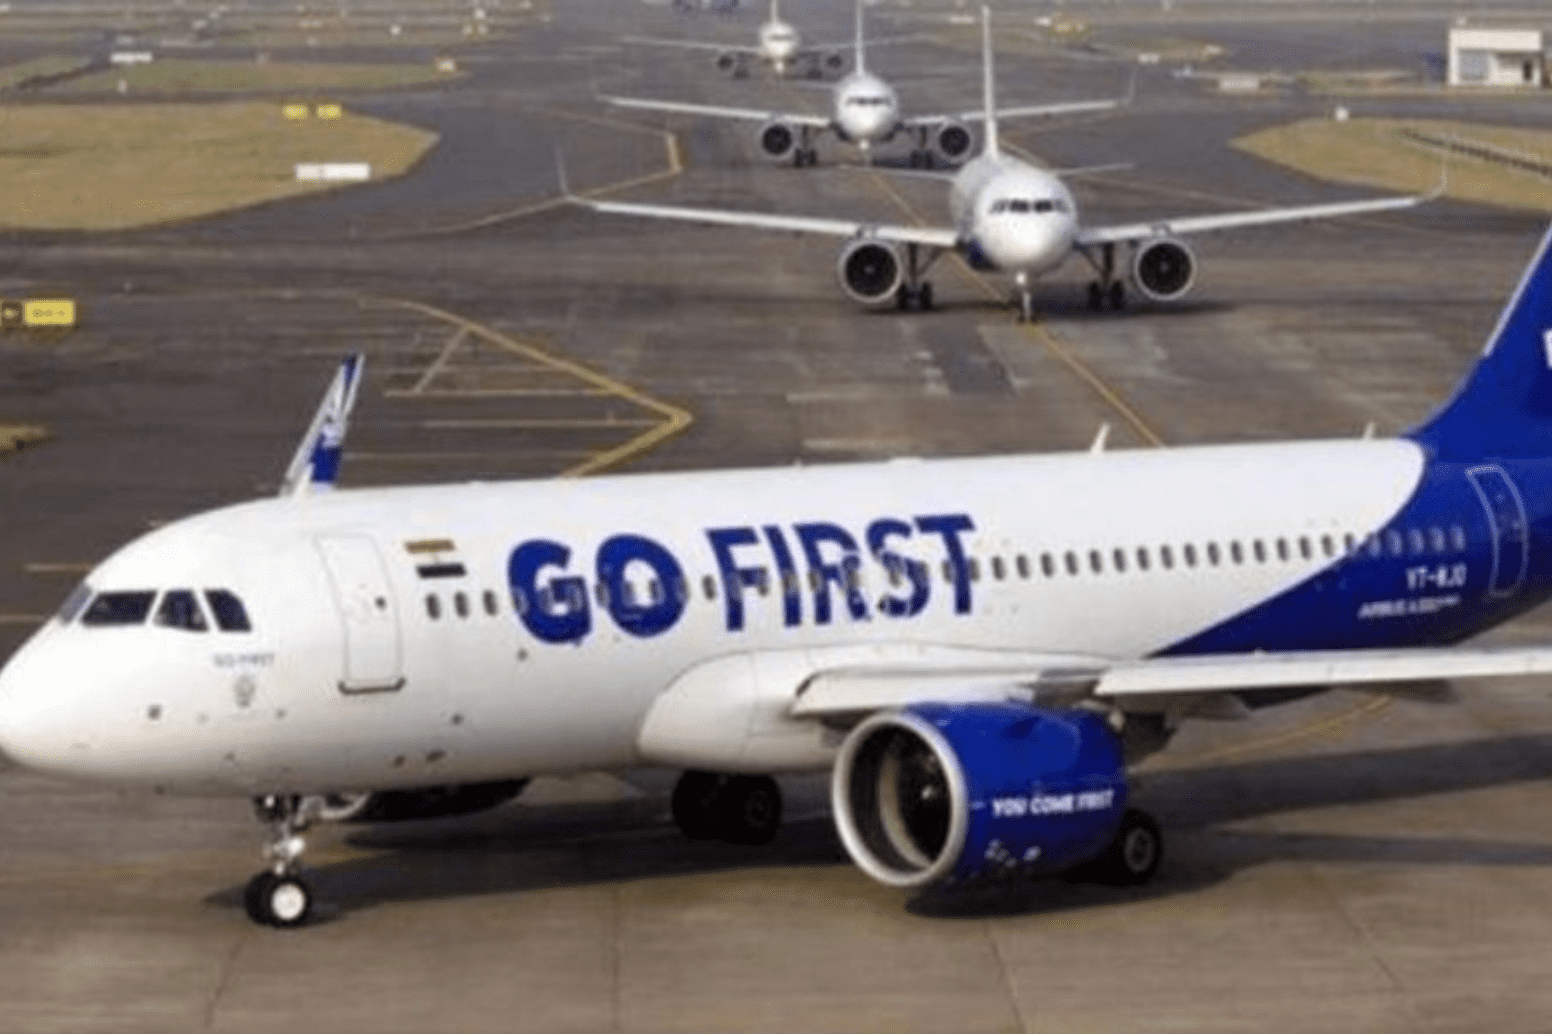 Đầu tuần này, Go First, hãng hàng không lớn thứ tư của Ấn Độ, nộp đơn xin bảo hộ phá sản. Ảnh: Indian Express